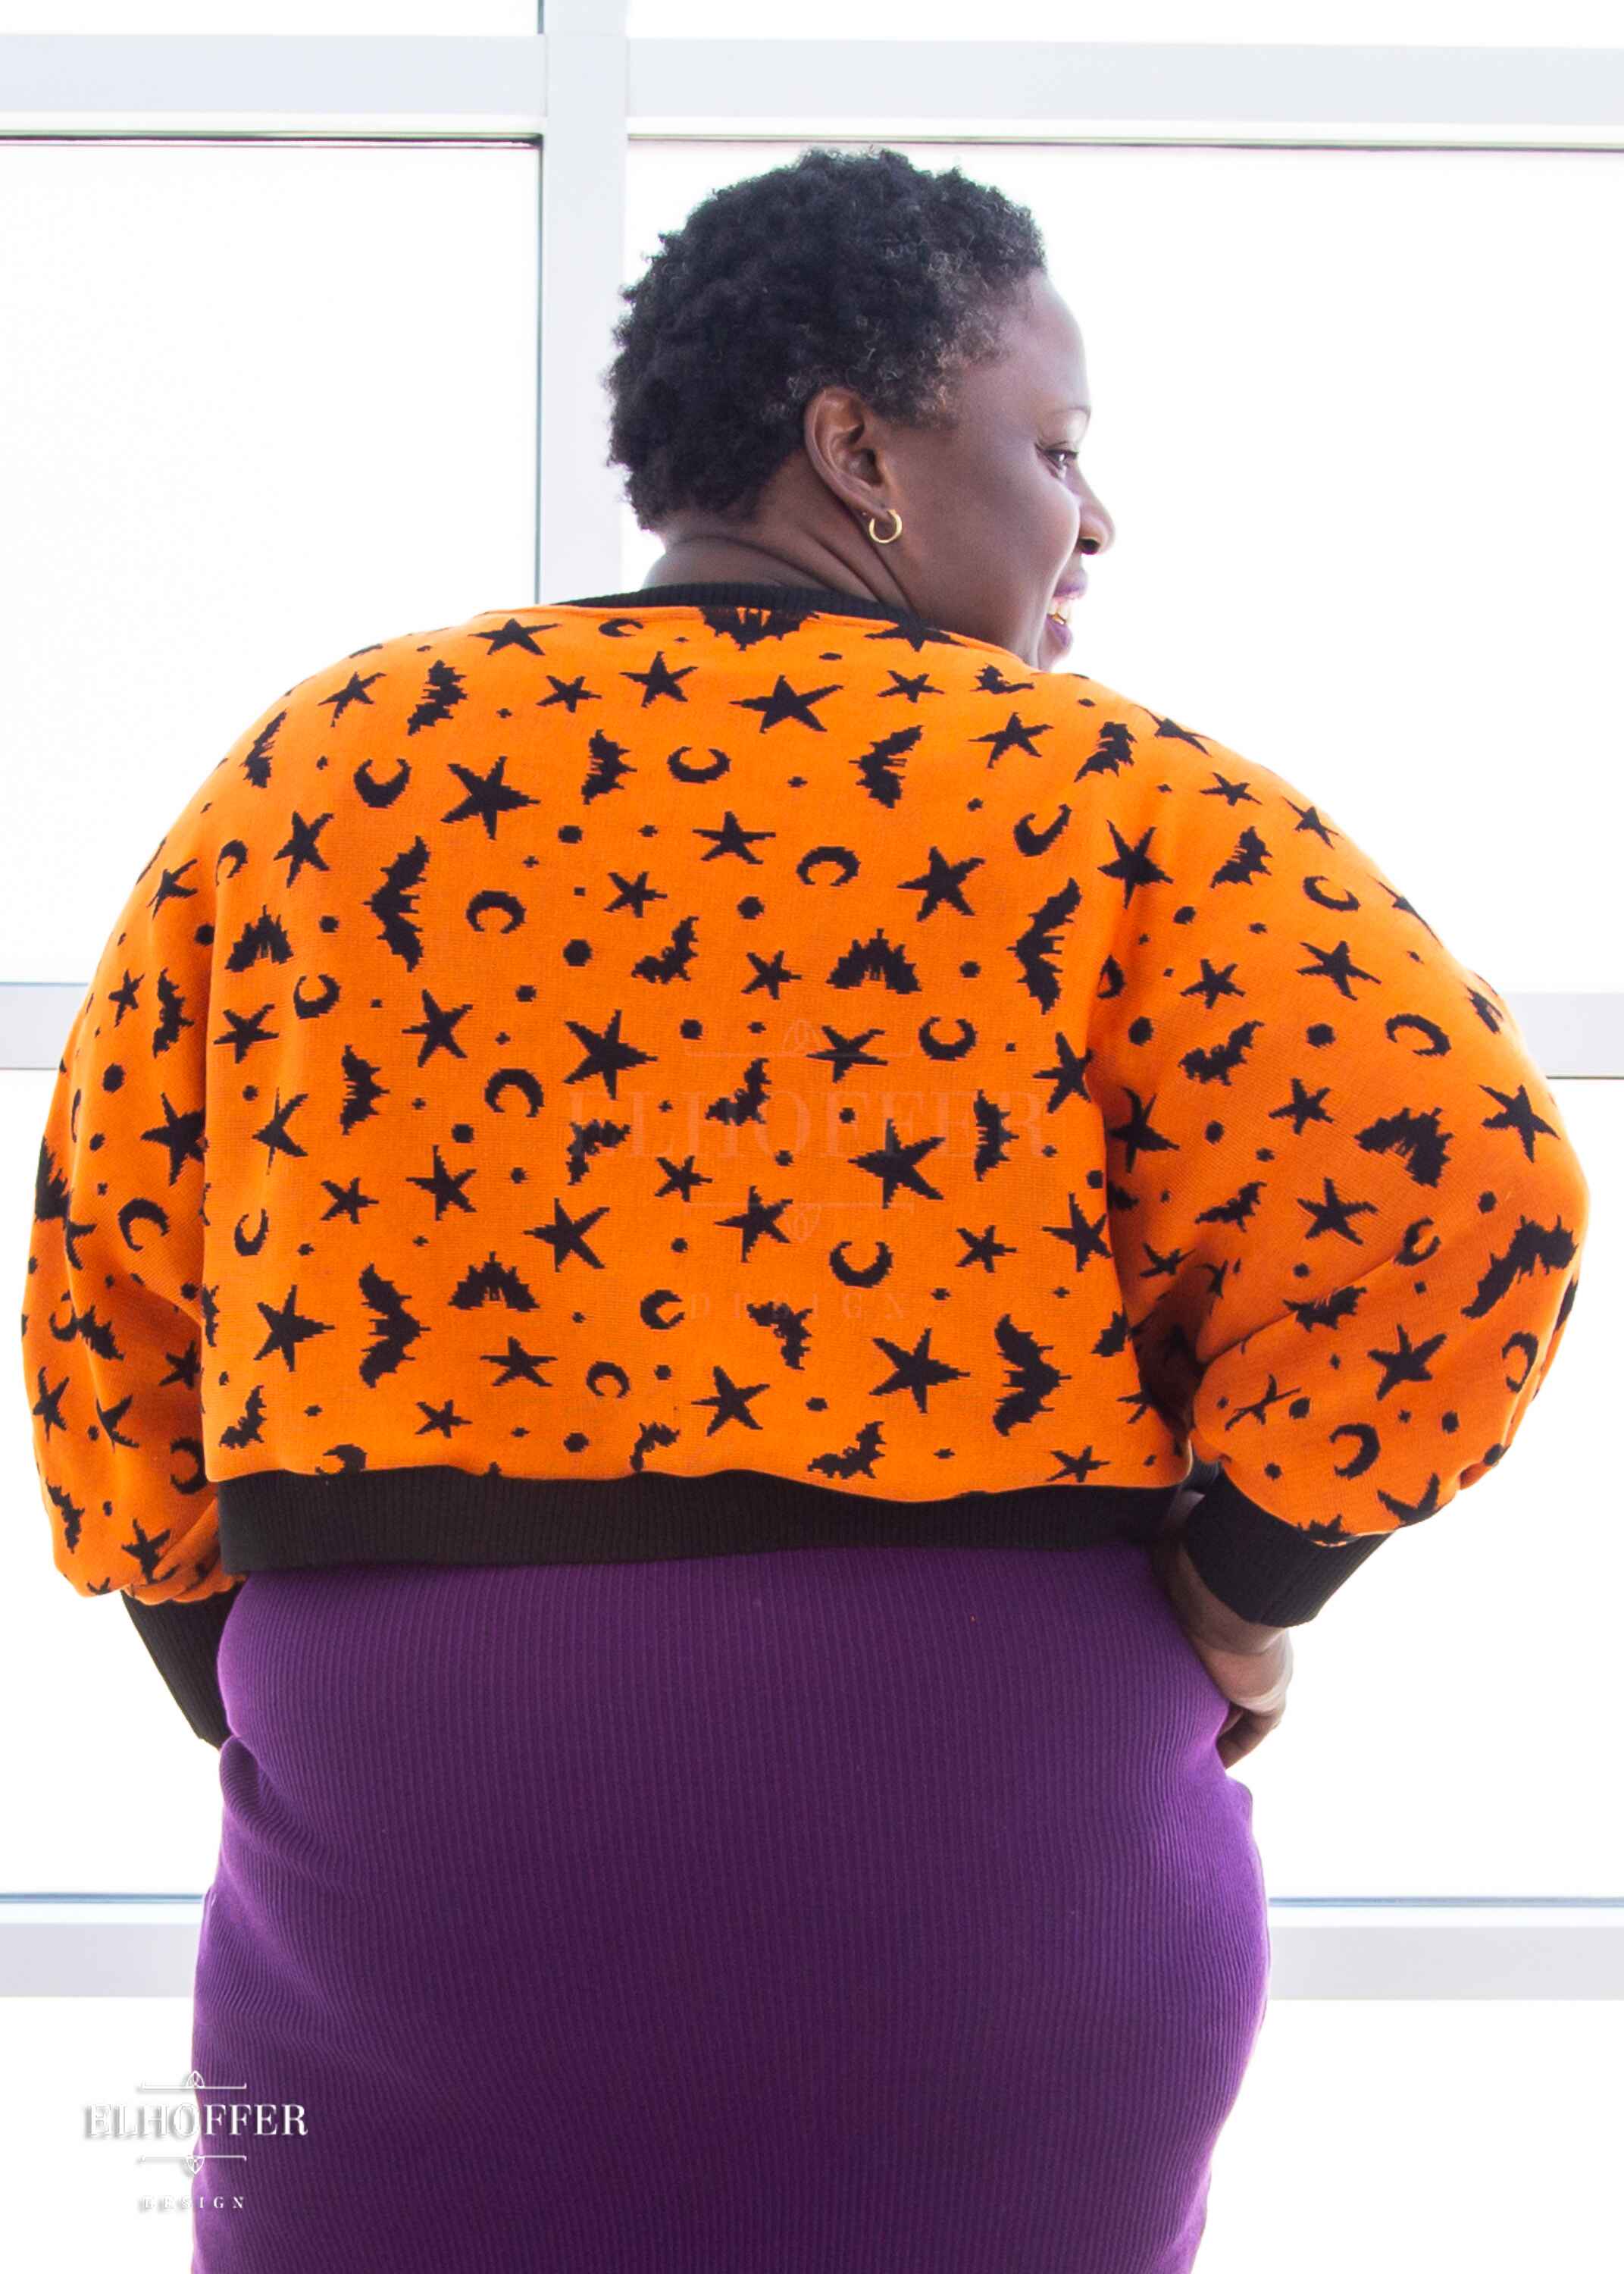 Essential Whitney Oversize Sweater - Orange w/ Black Batty Witch